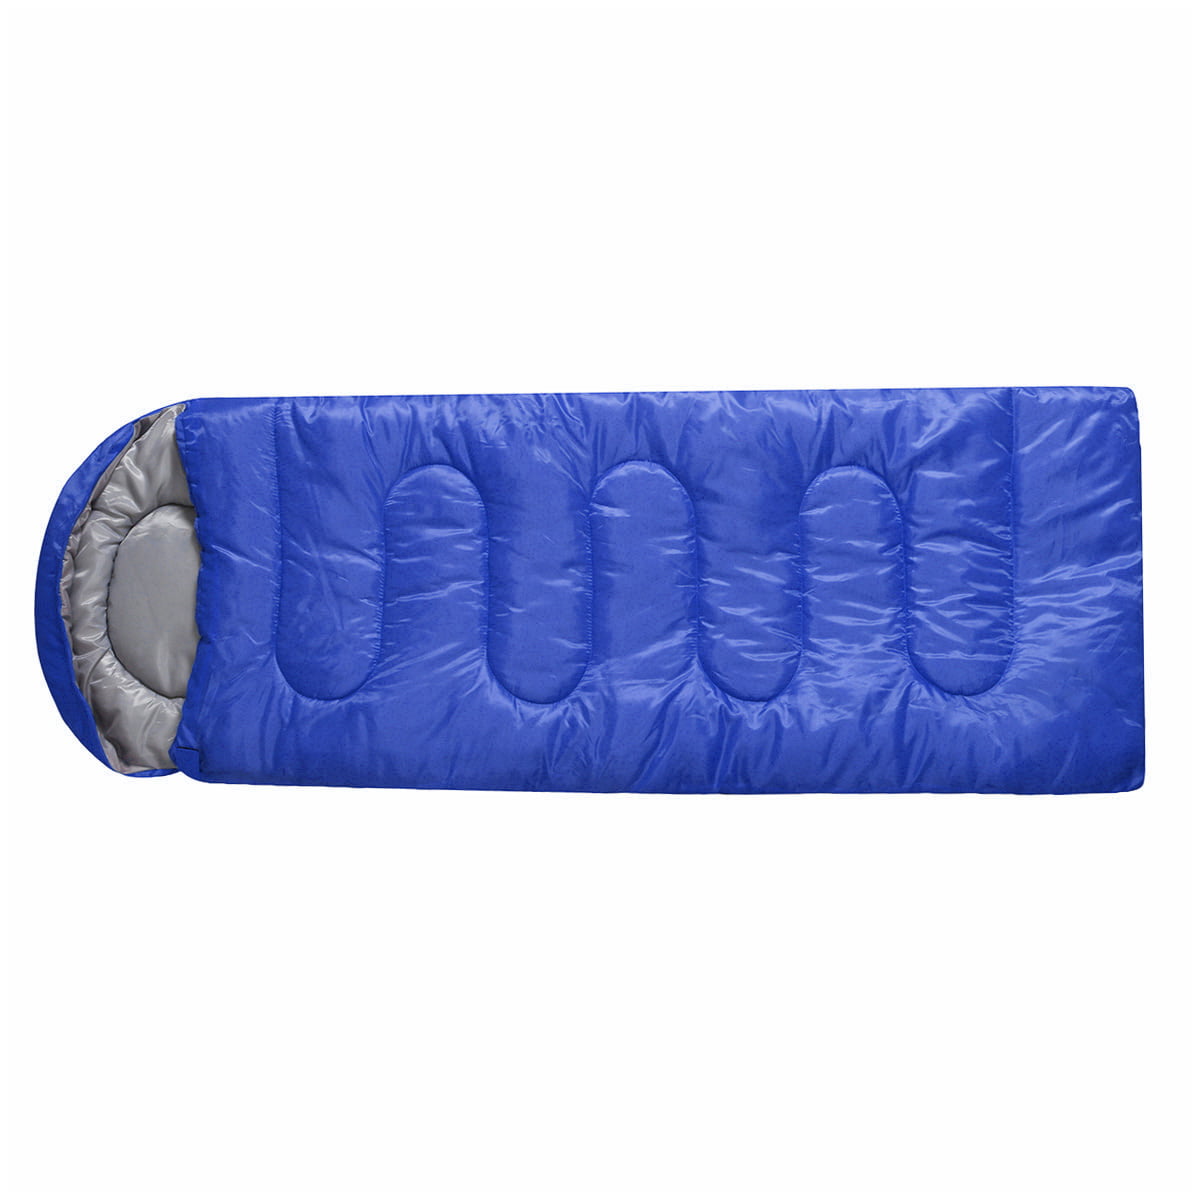 Premium Sleeping Bag for Adult & Kids Lightweight Camping Hiking Indoor Outdoor 